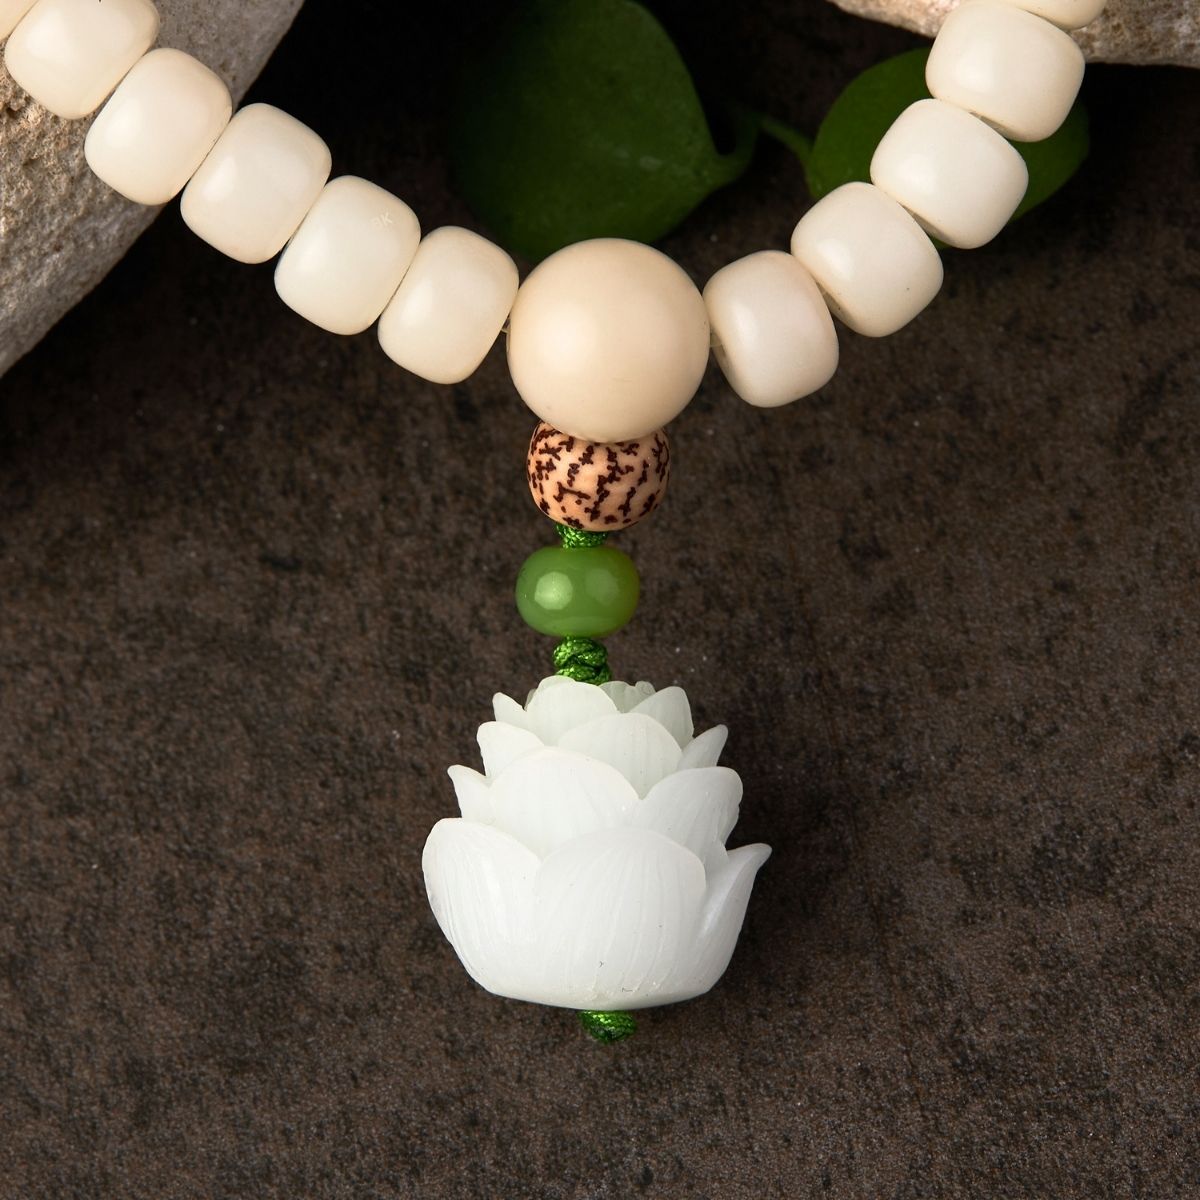 White Bodhi Seed 108 Mala Beads Vegan Buddha Bracelet / Necklace